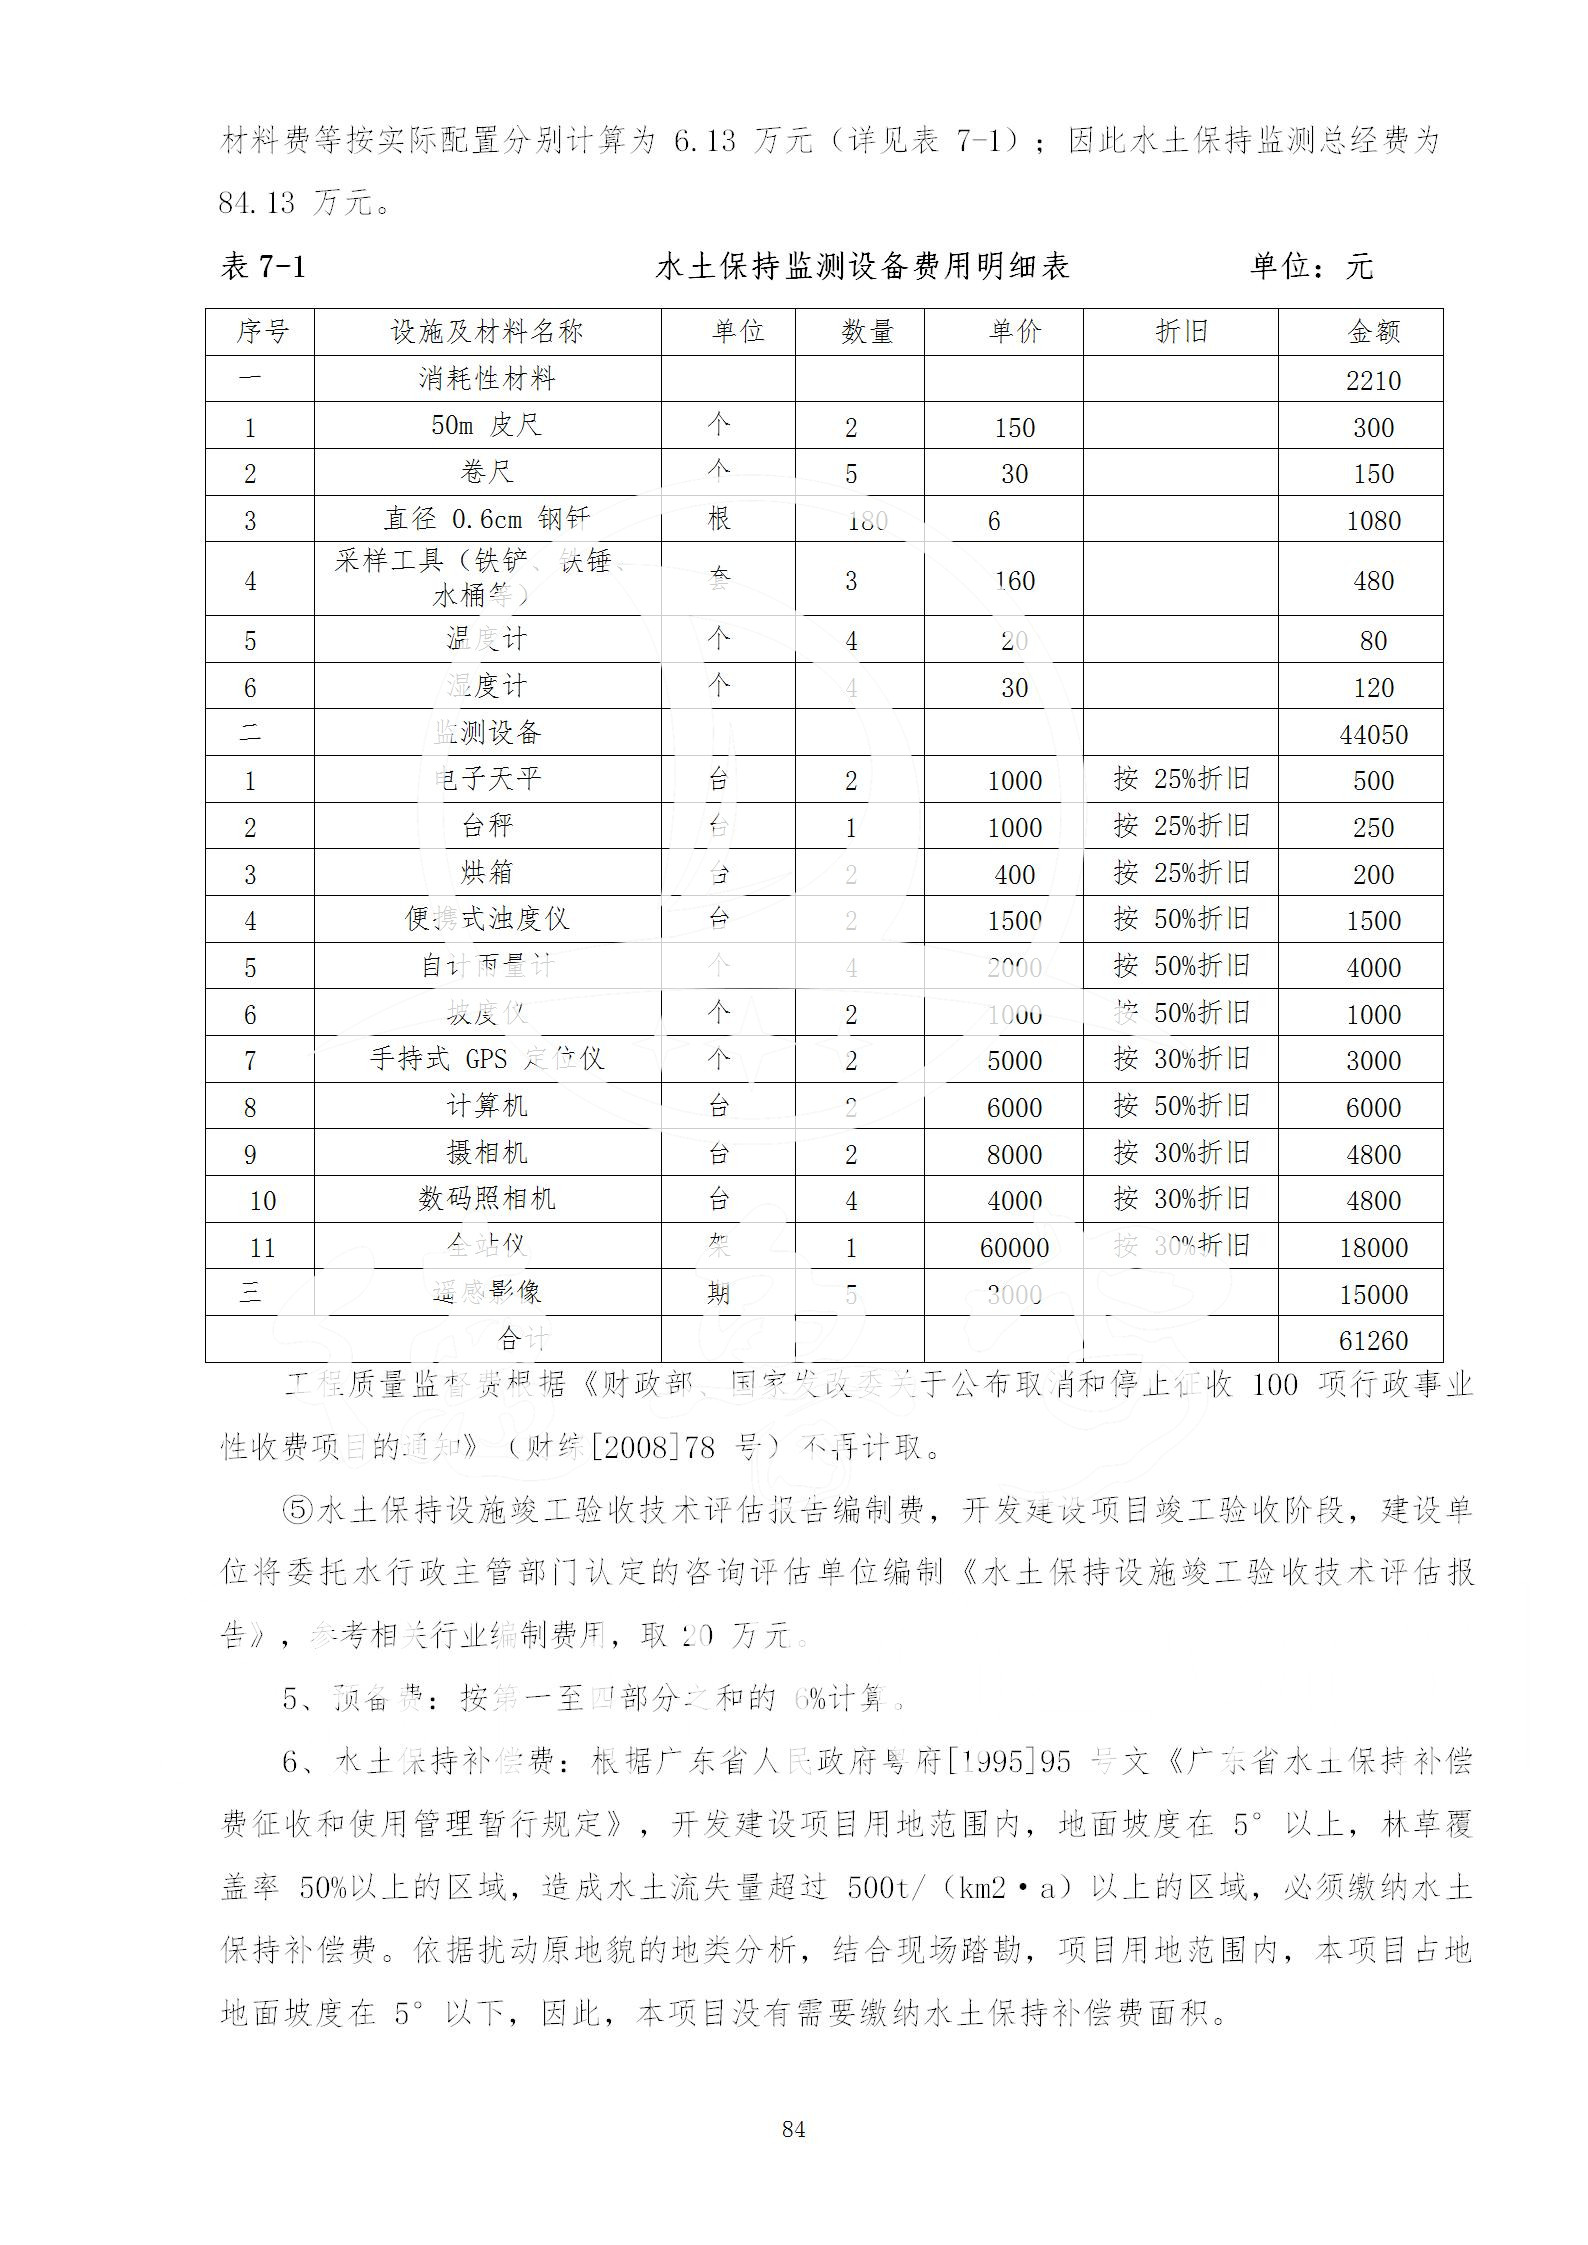 广东省大圣寺水土保持报告  修改稿5_84.jpg